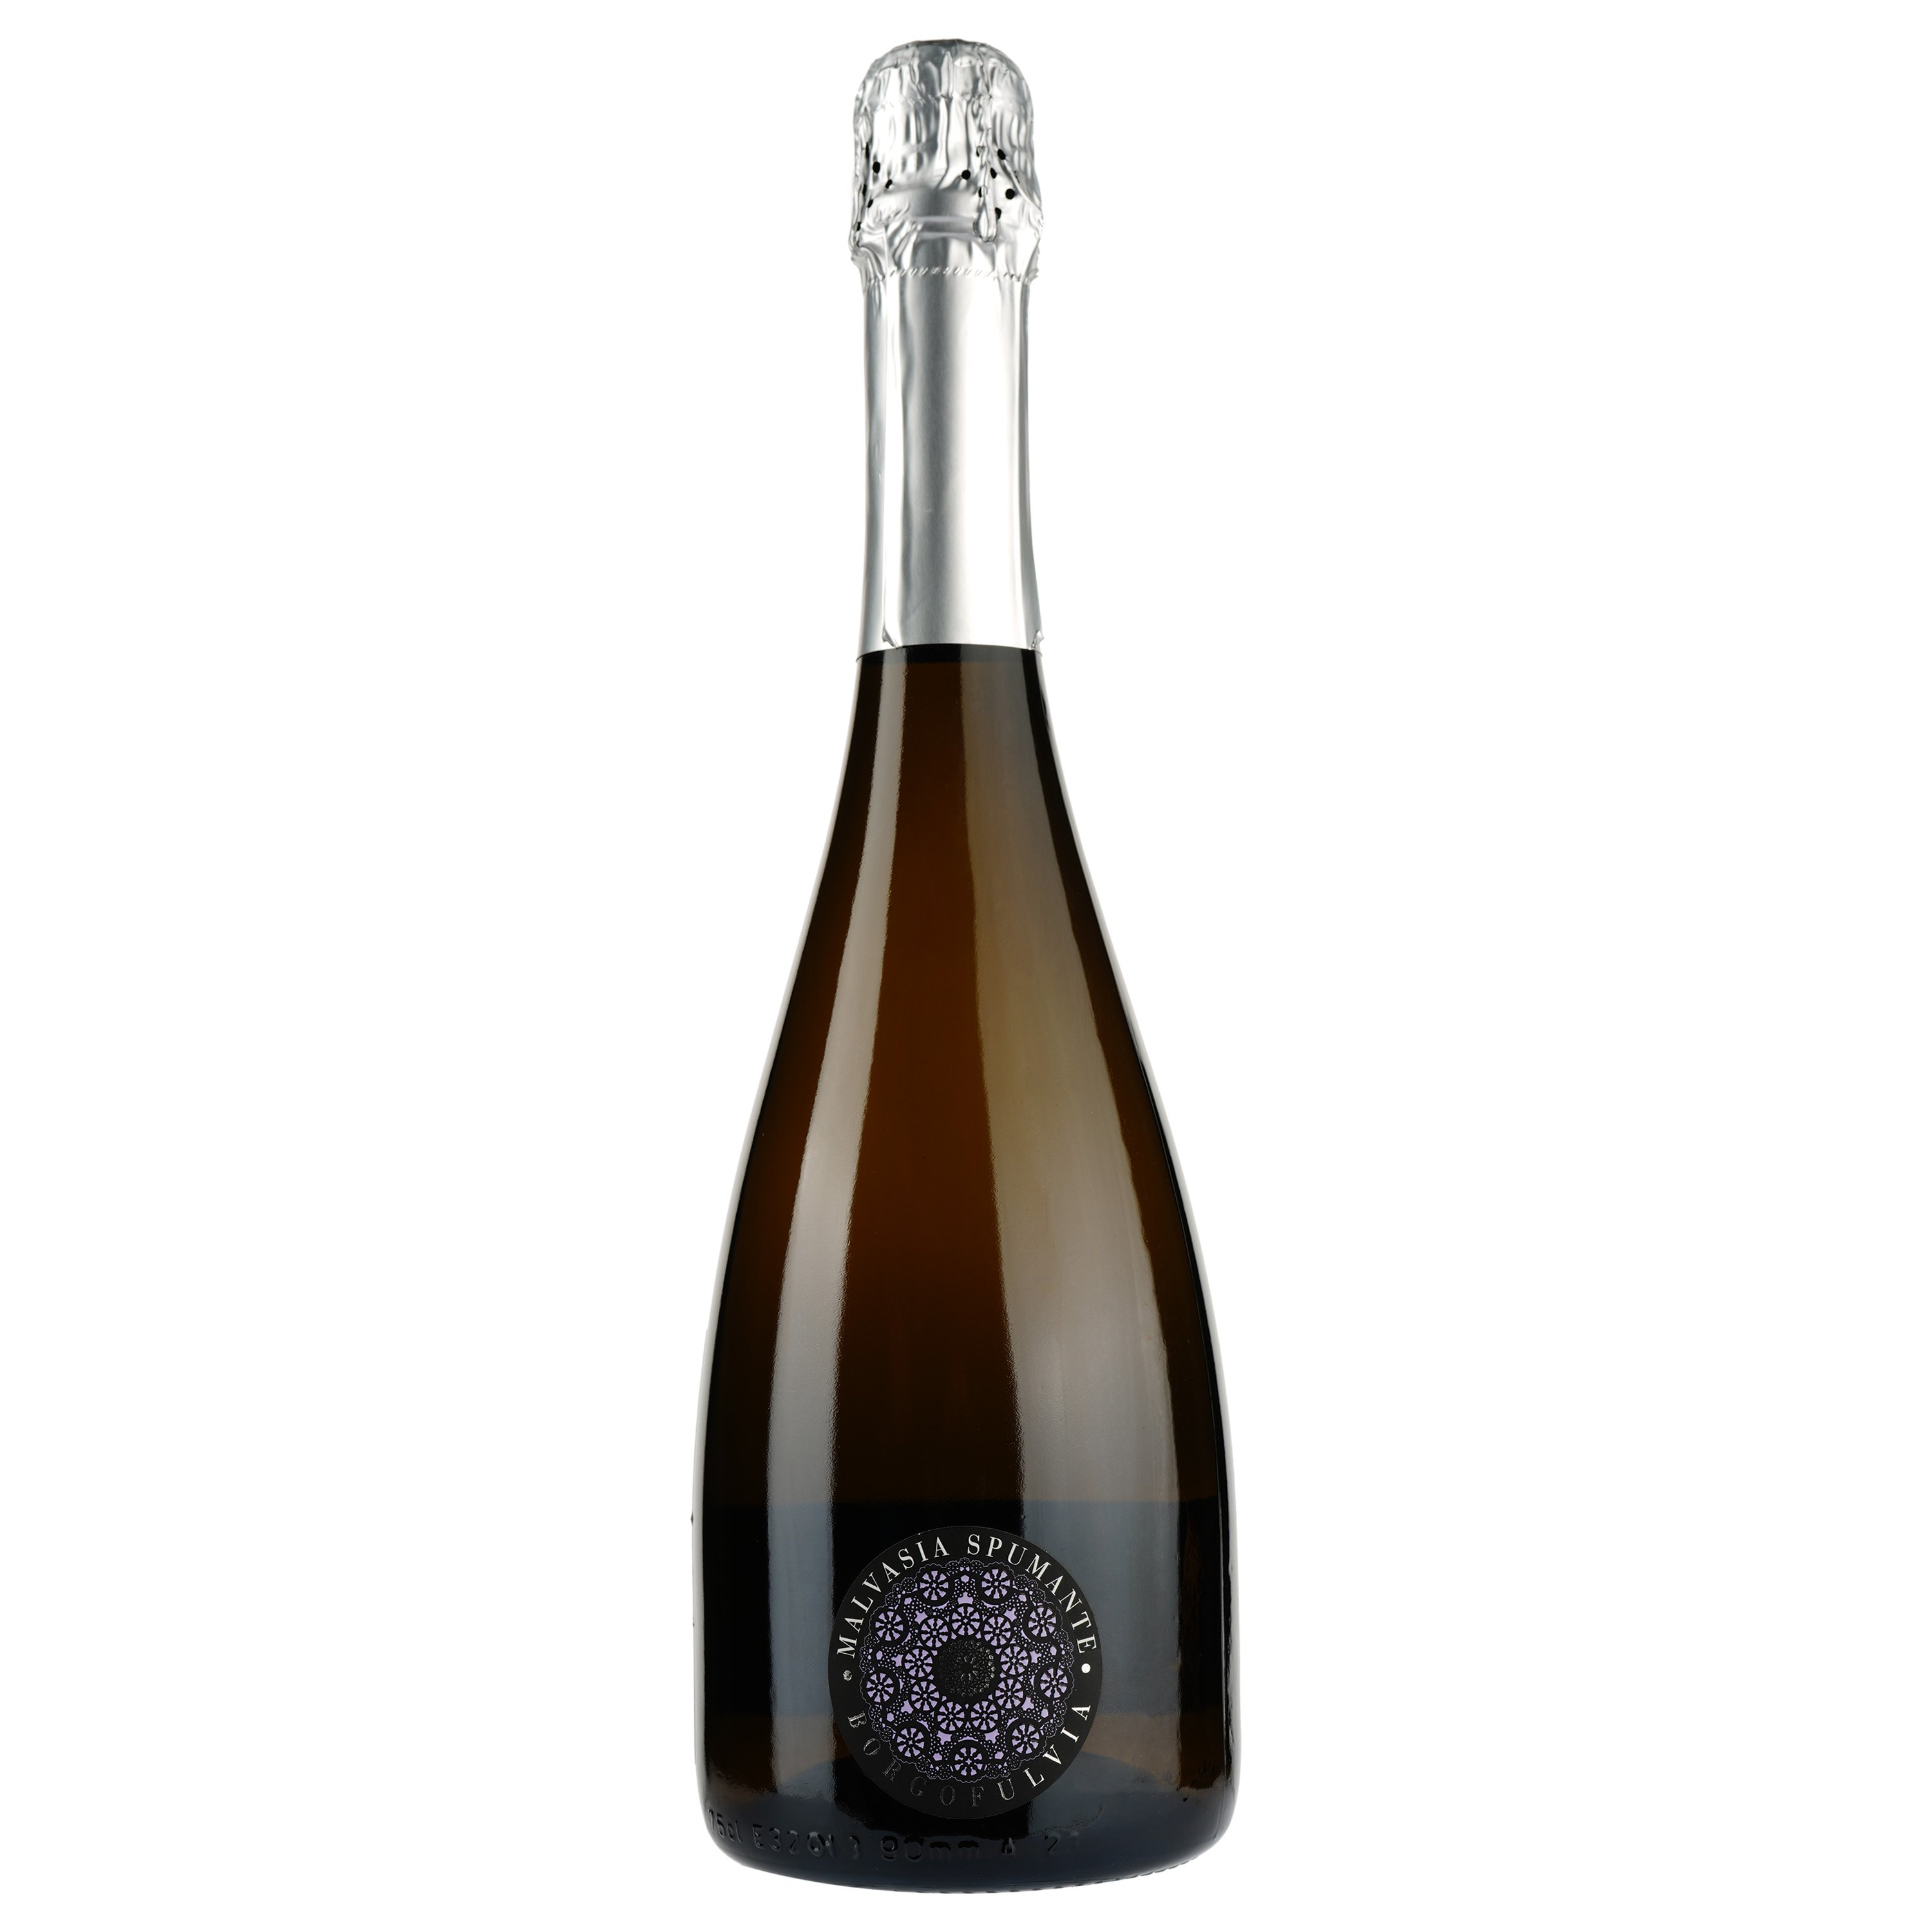 Игристое вино Borgofulvia Spumante Malvasia dolce, белое, полусладкое, 7,5%, 0,75 л - фото 1